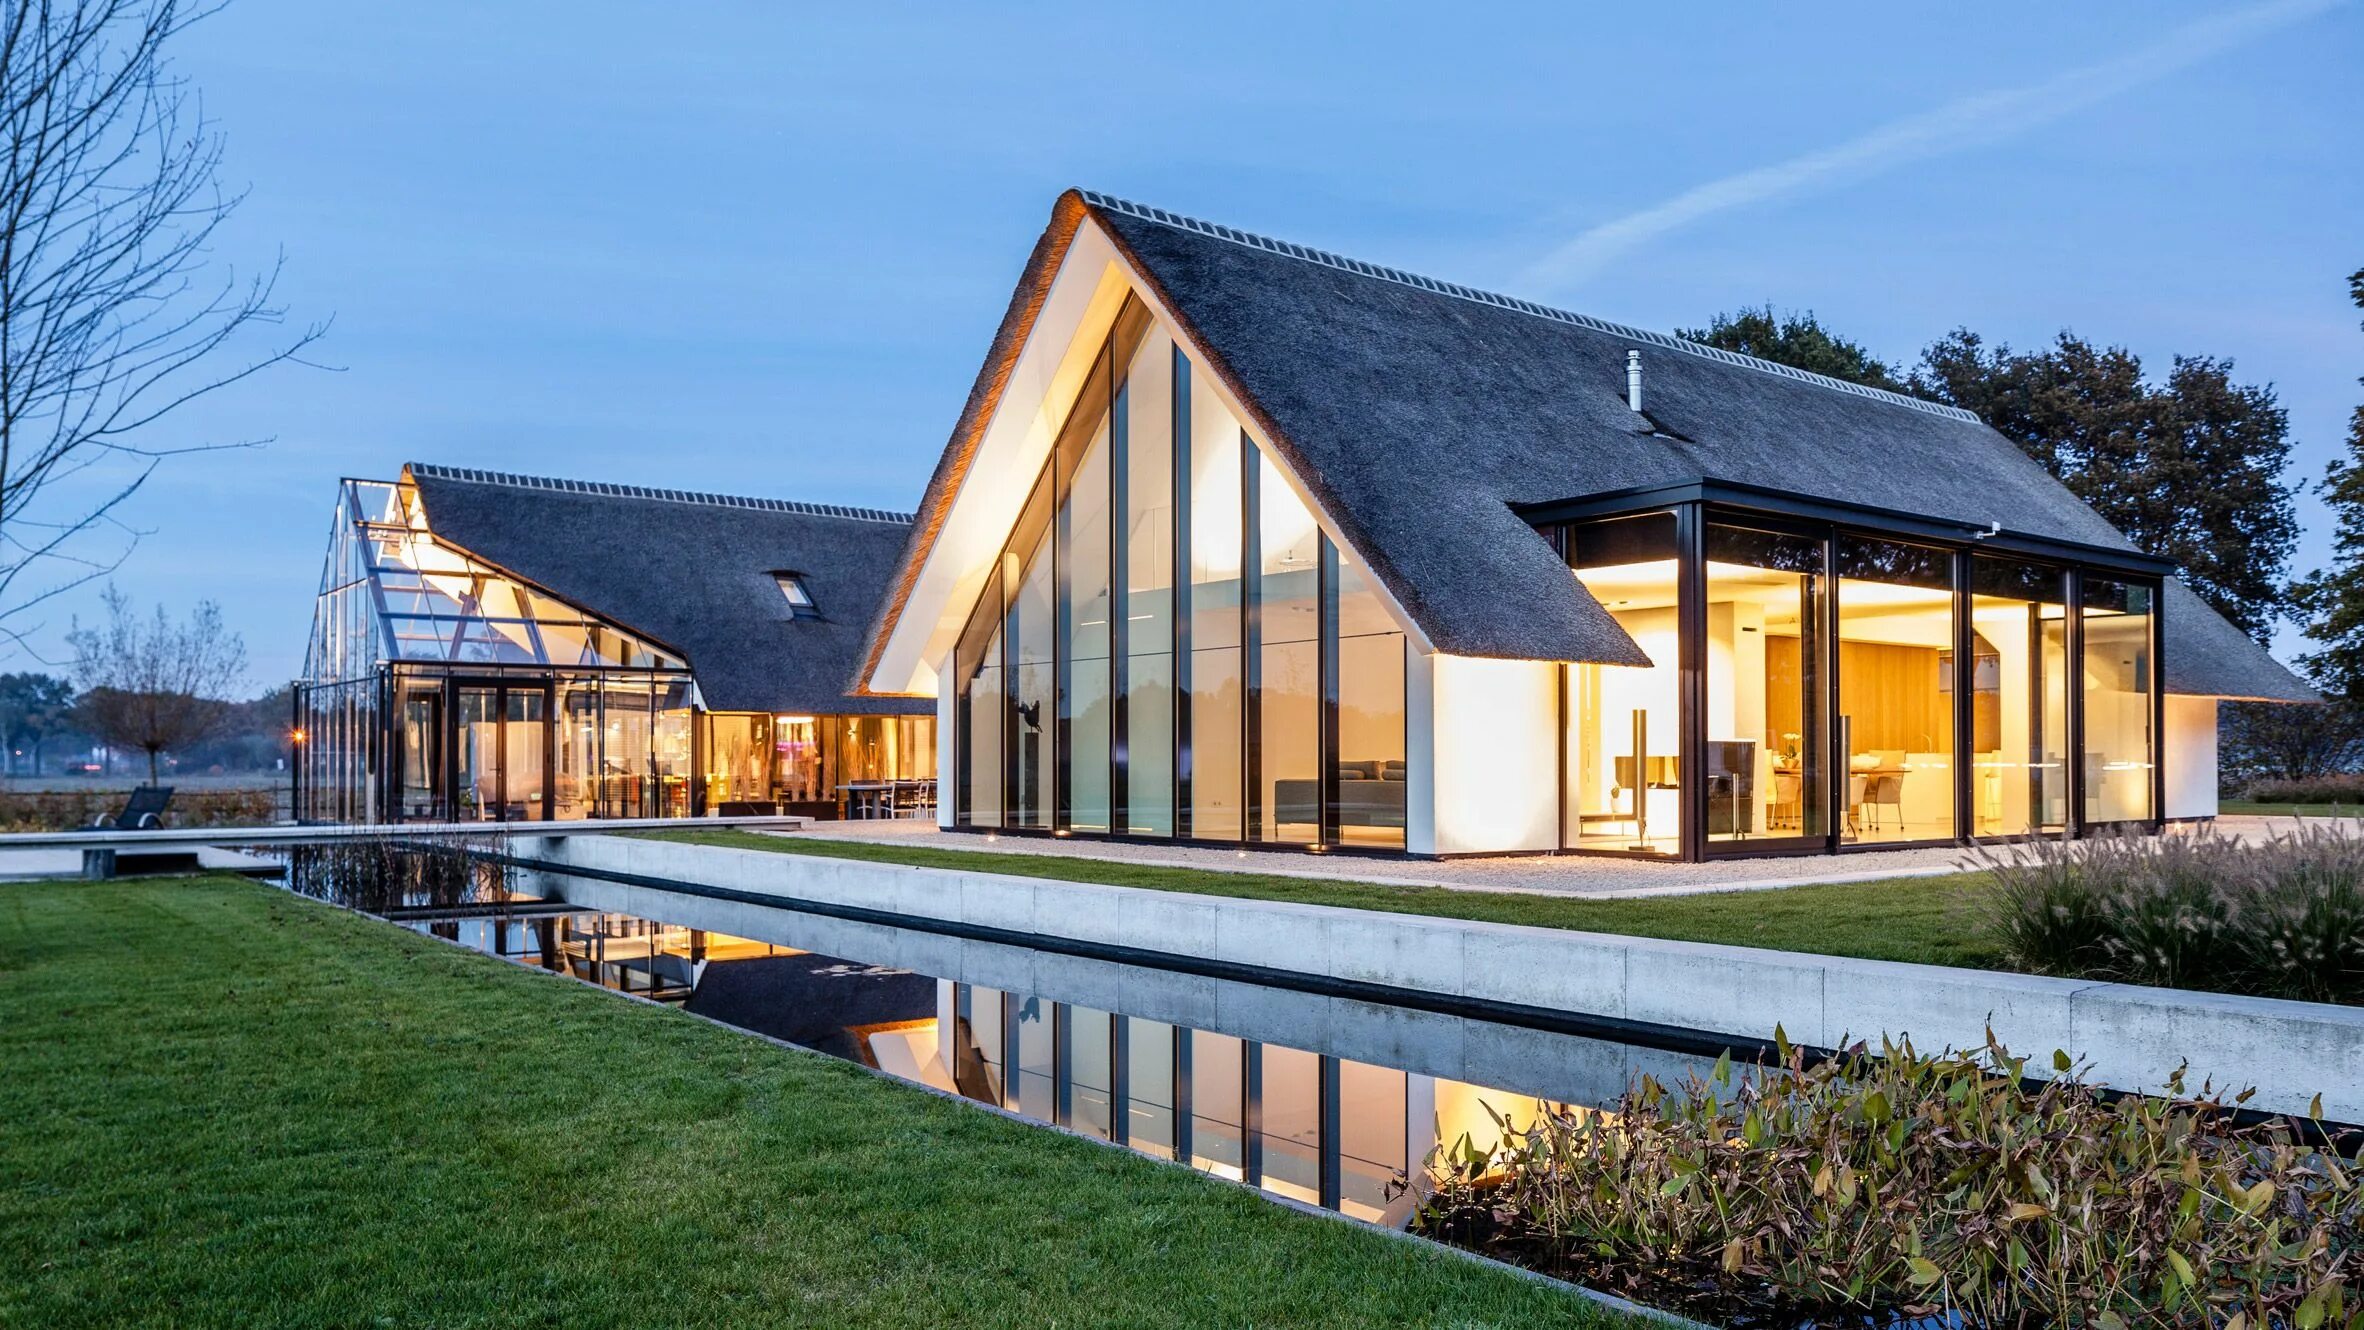 Architecture 64. Дом с соломенной крышей в Голландии. Барнхаус Голландия. Барнхаус Швеция. Барнхаус Канада.